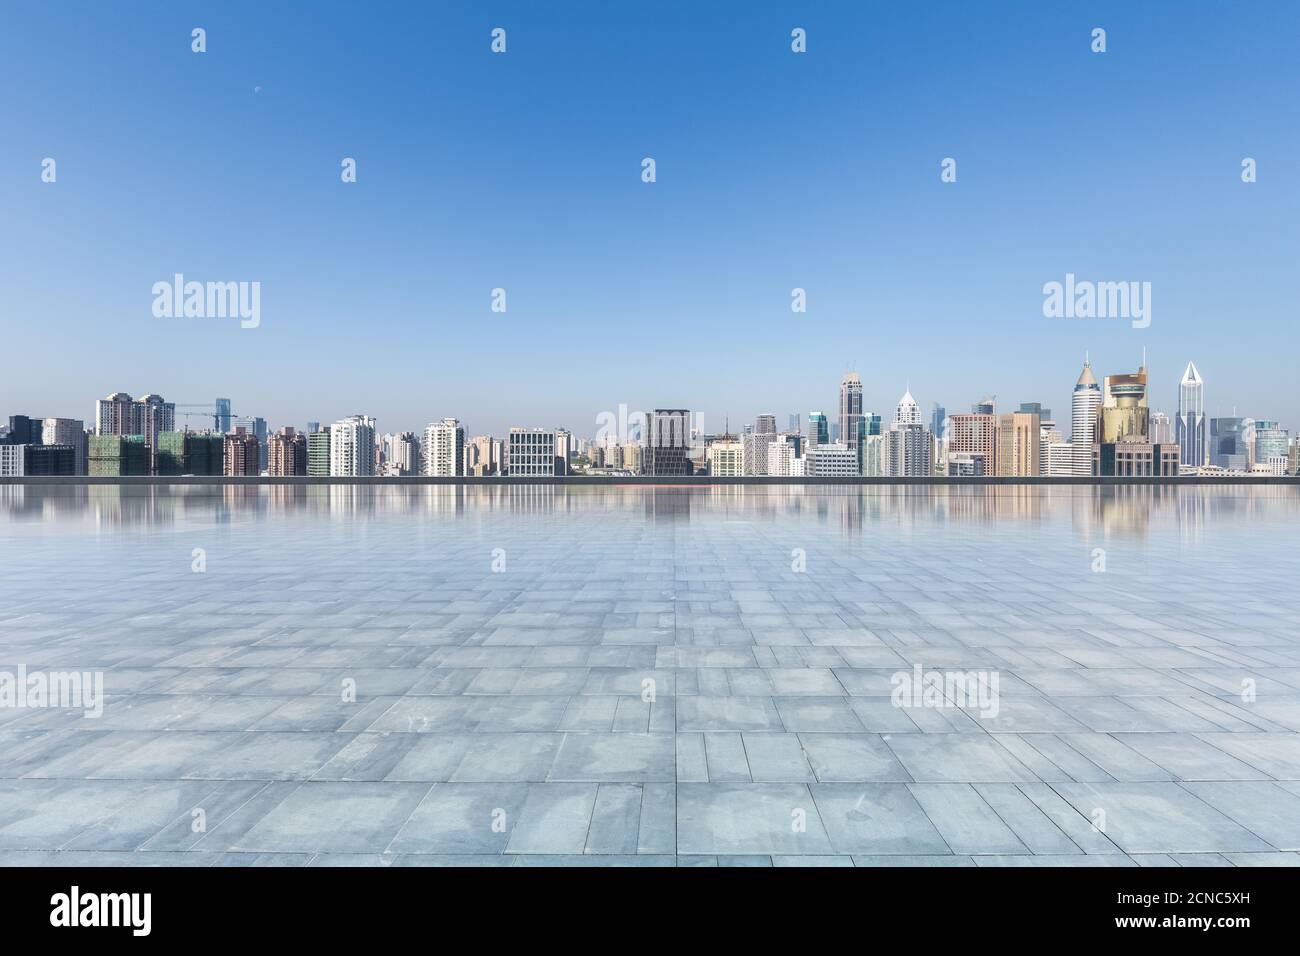 Moderne Skyline mit leerem quadratischem Boden Stockfoto